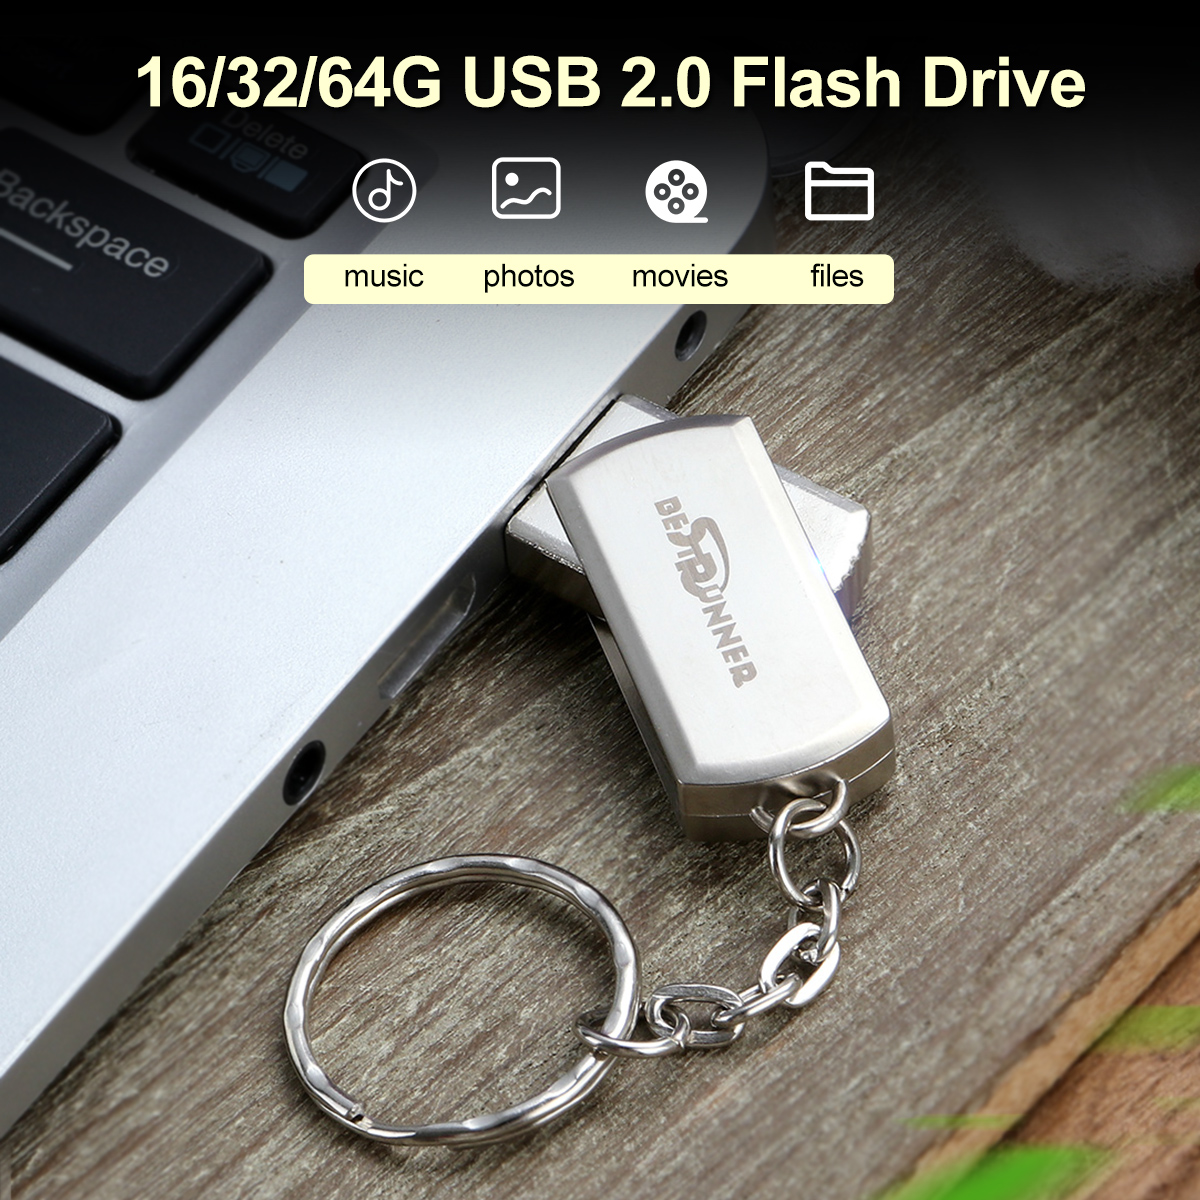 USB-Flash-Drive-USB-20-16GB-32GB-64GB-360ordm-Rotation-Metal-Flash-Memory-Card-USB-Stick-Pen-Drive-U-1718772-1